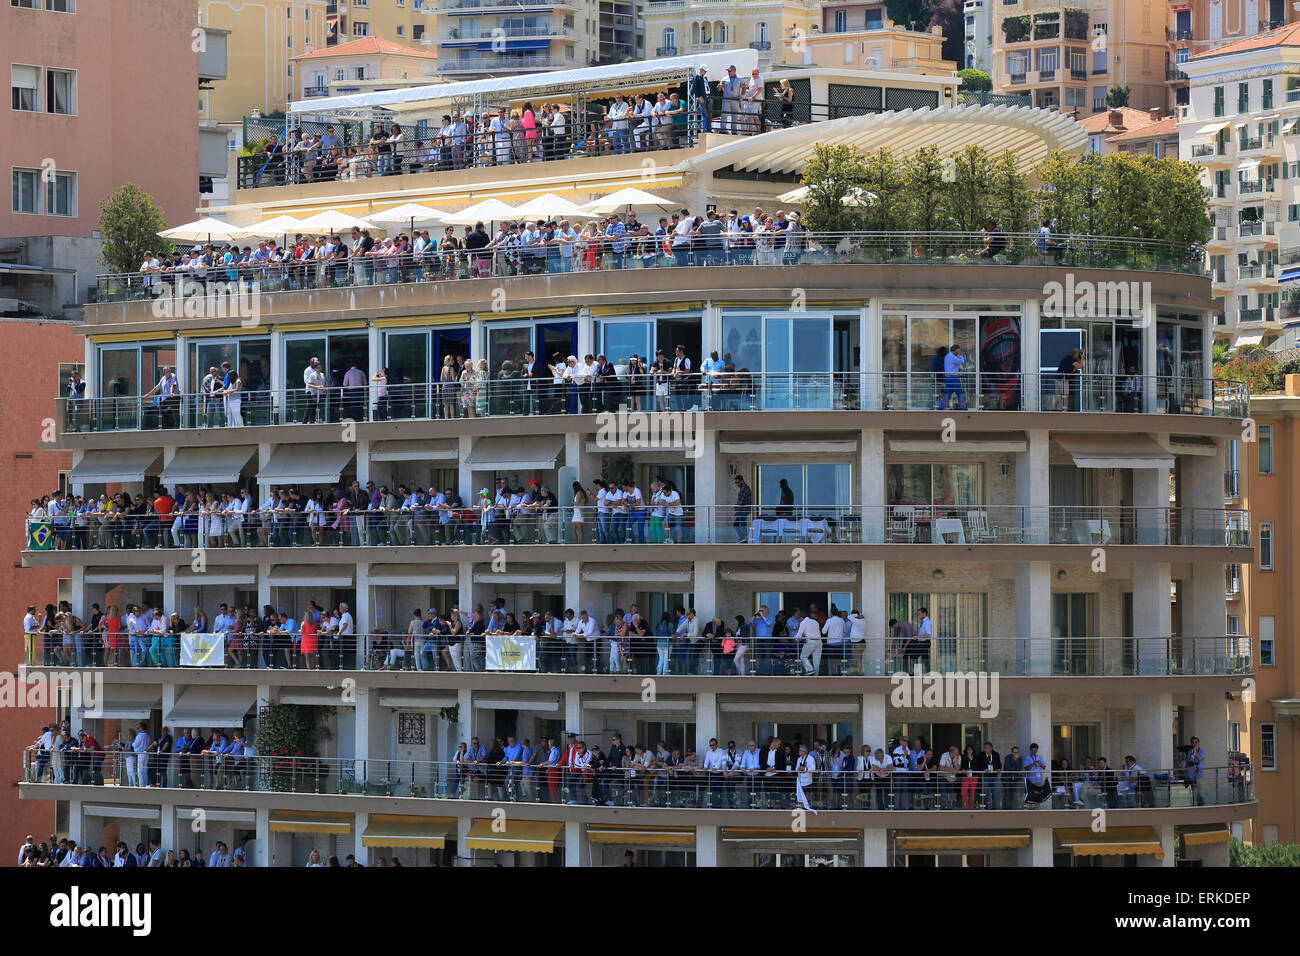 Los espectadores en los balcones de un edificio alto en el Gran Premio de Fórmula 1 de Mónaco, el Principado de Mónaco 2015 Foto de stock